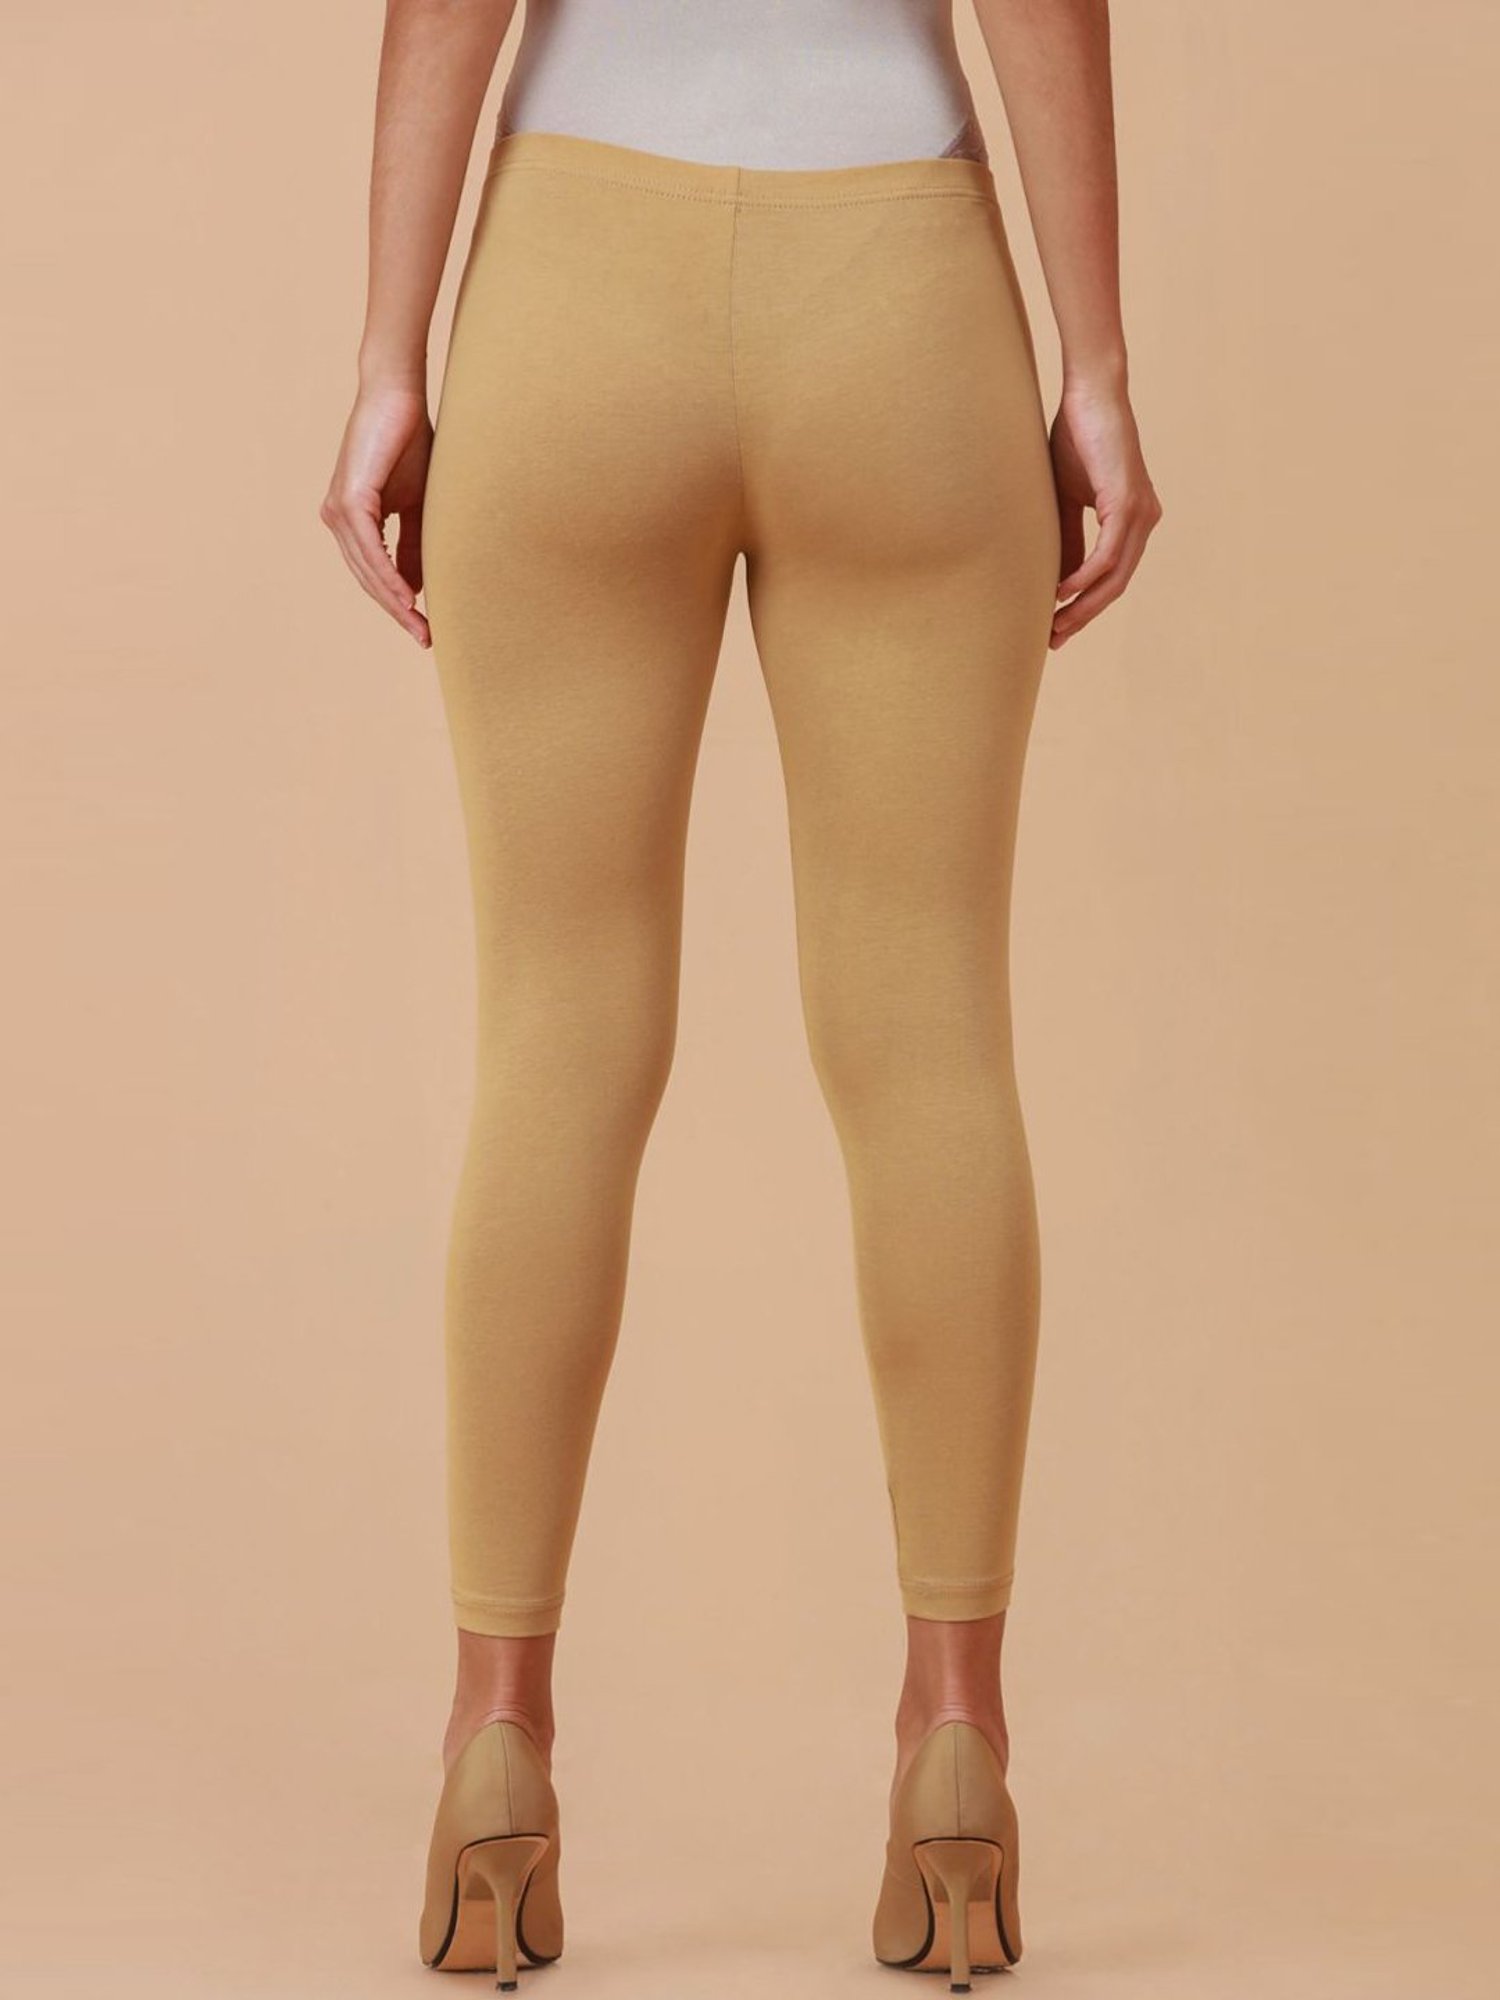 Details 170+ soch brand leggings latest